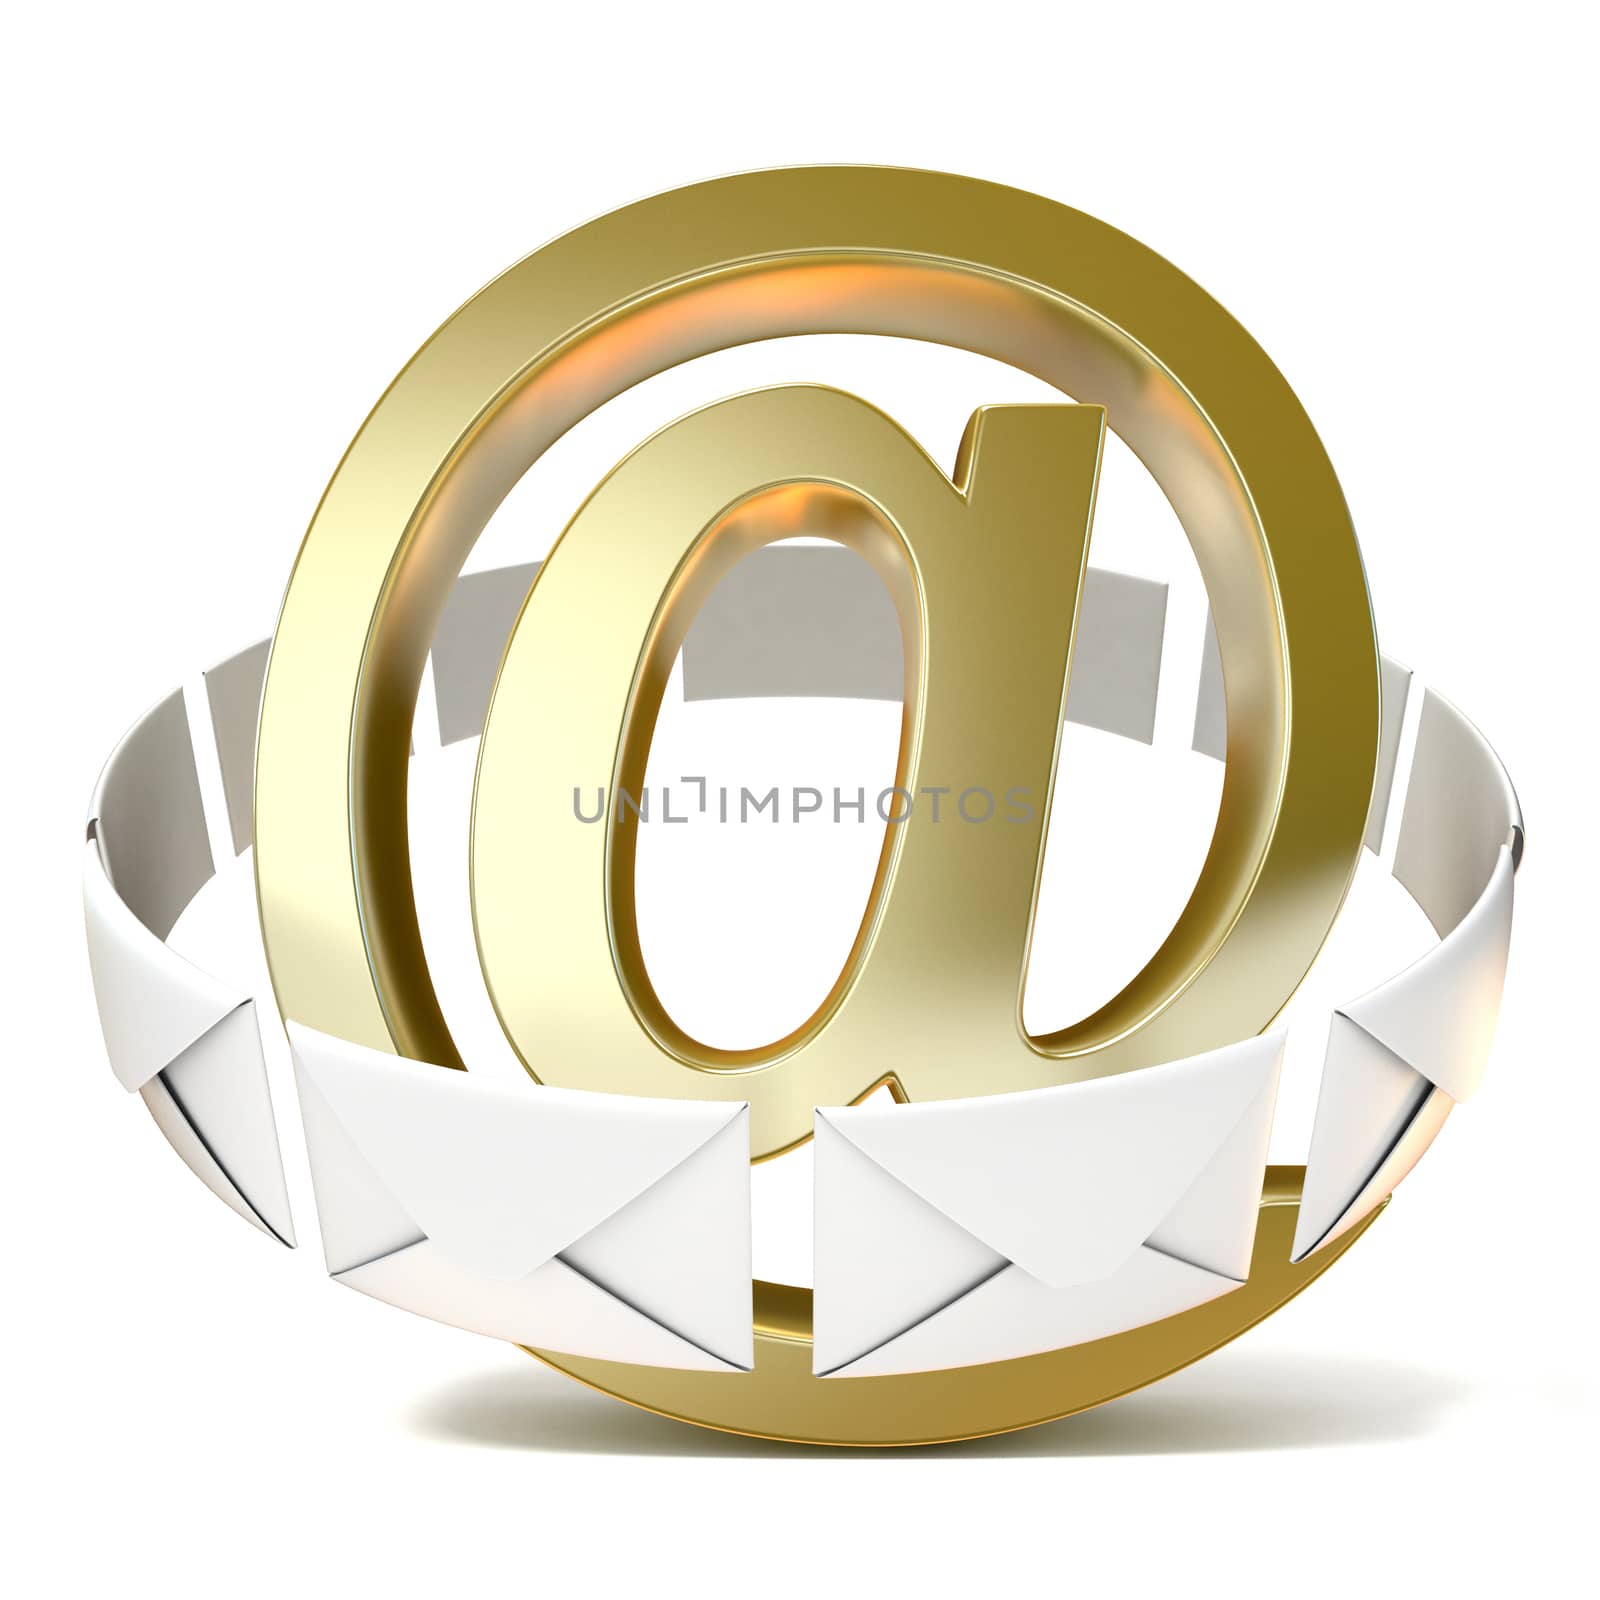 Envelopes around golden e-mail sign. 3D render illustration isolated on white background